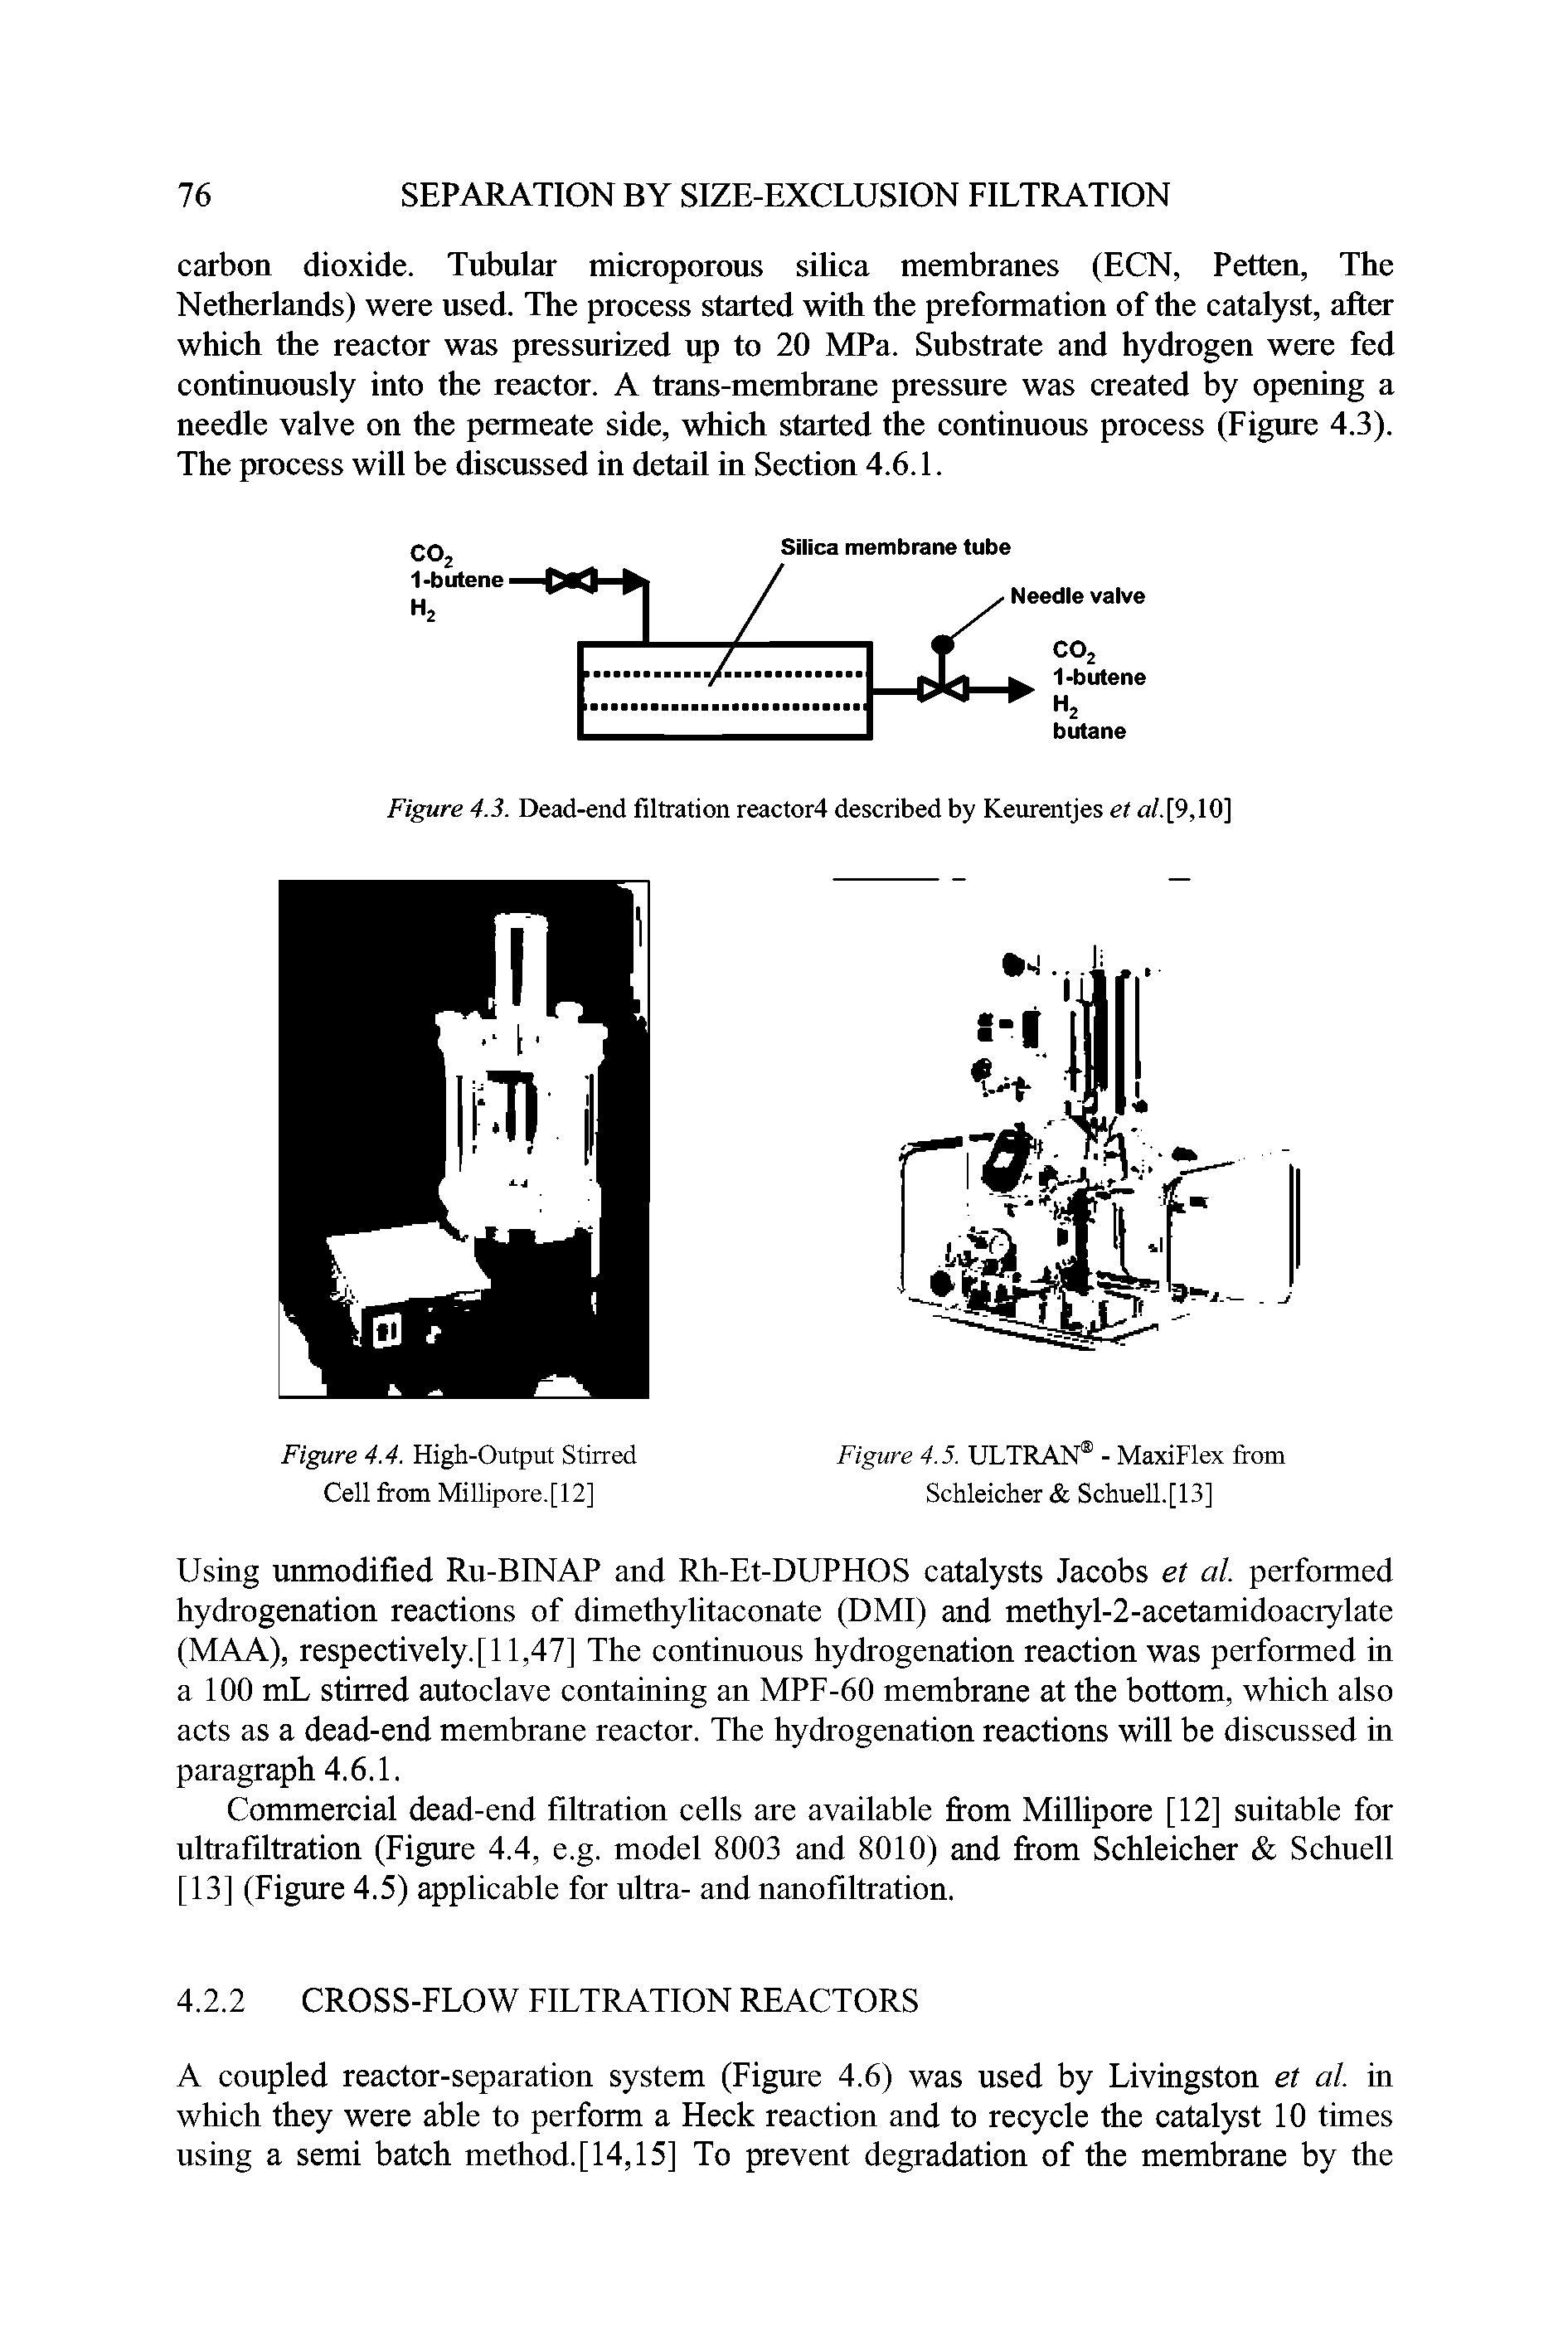 Figure 4.3. Dead-end filtration reactor4 described by Keurentjes et a/.[9,10]...